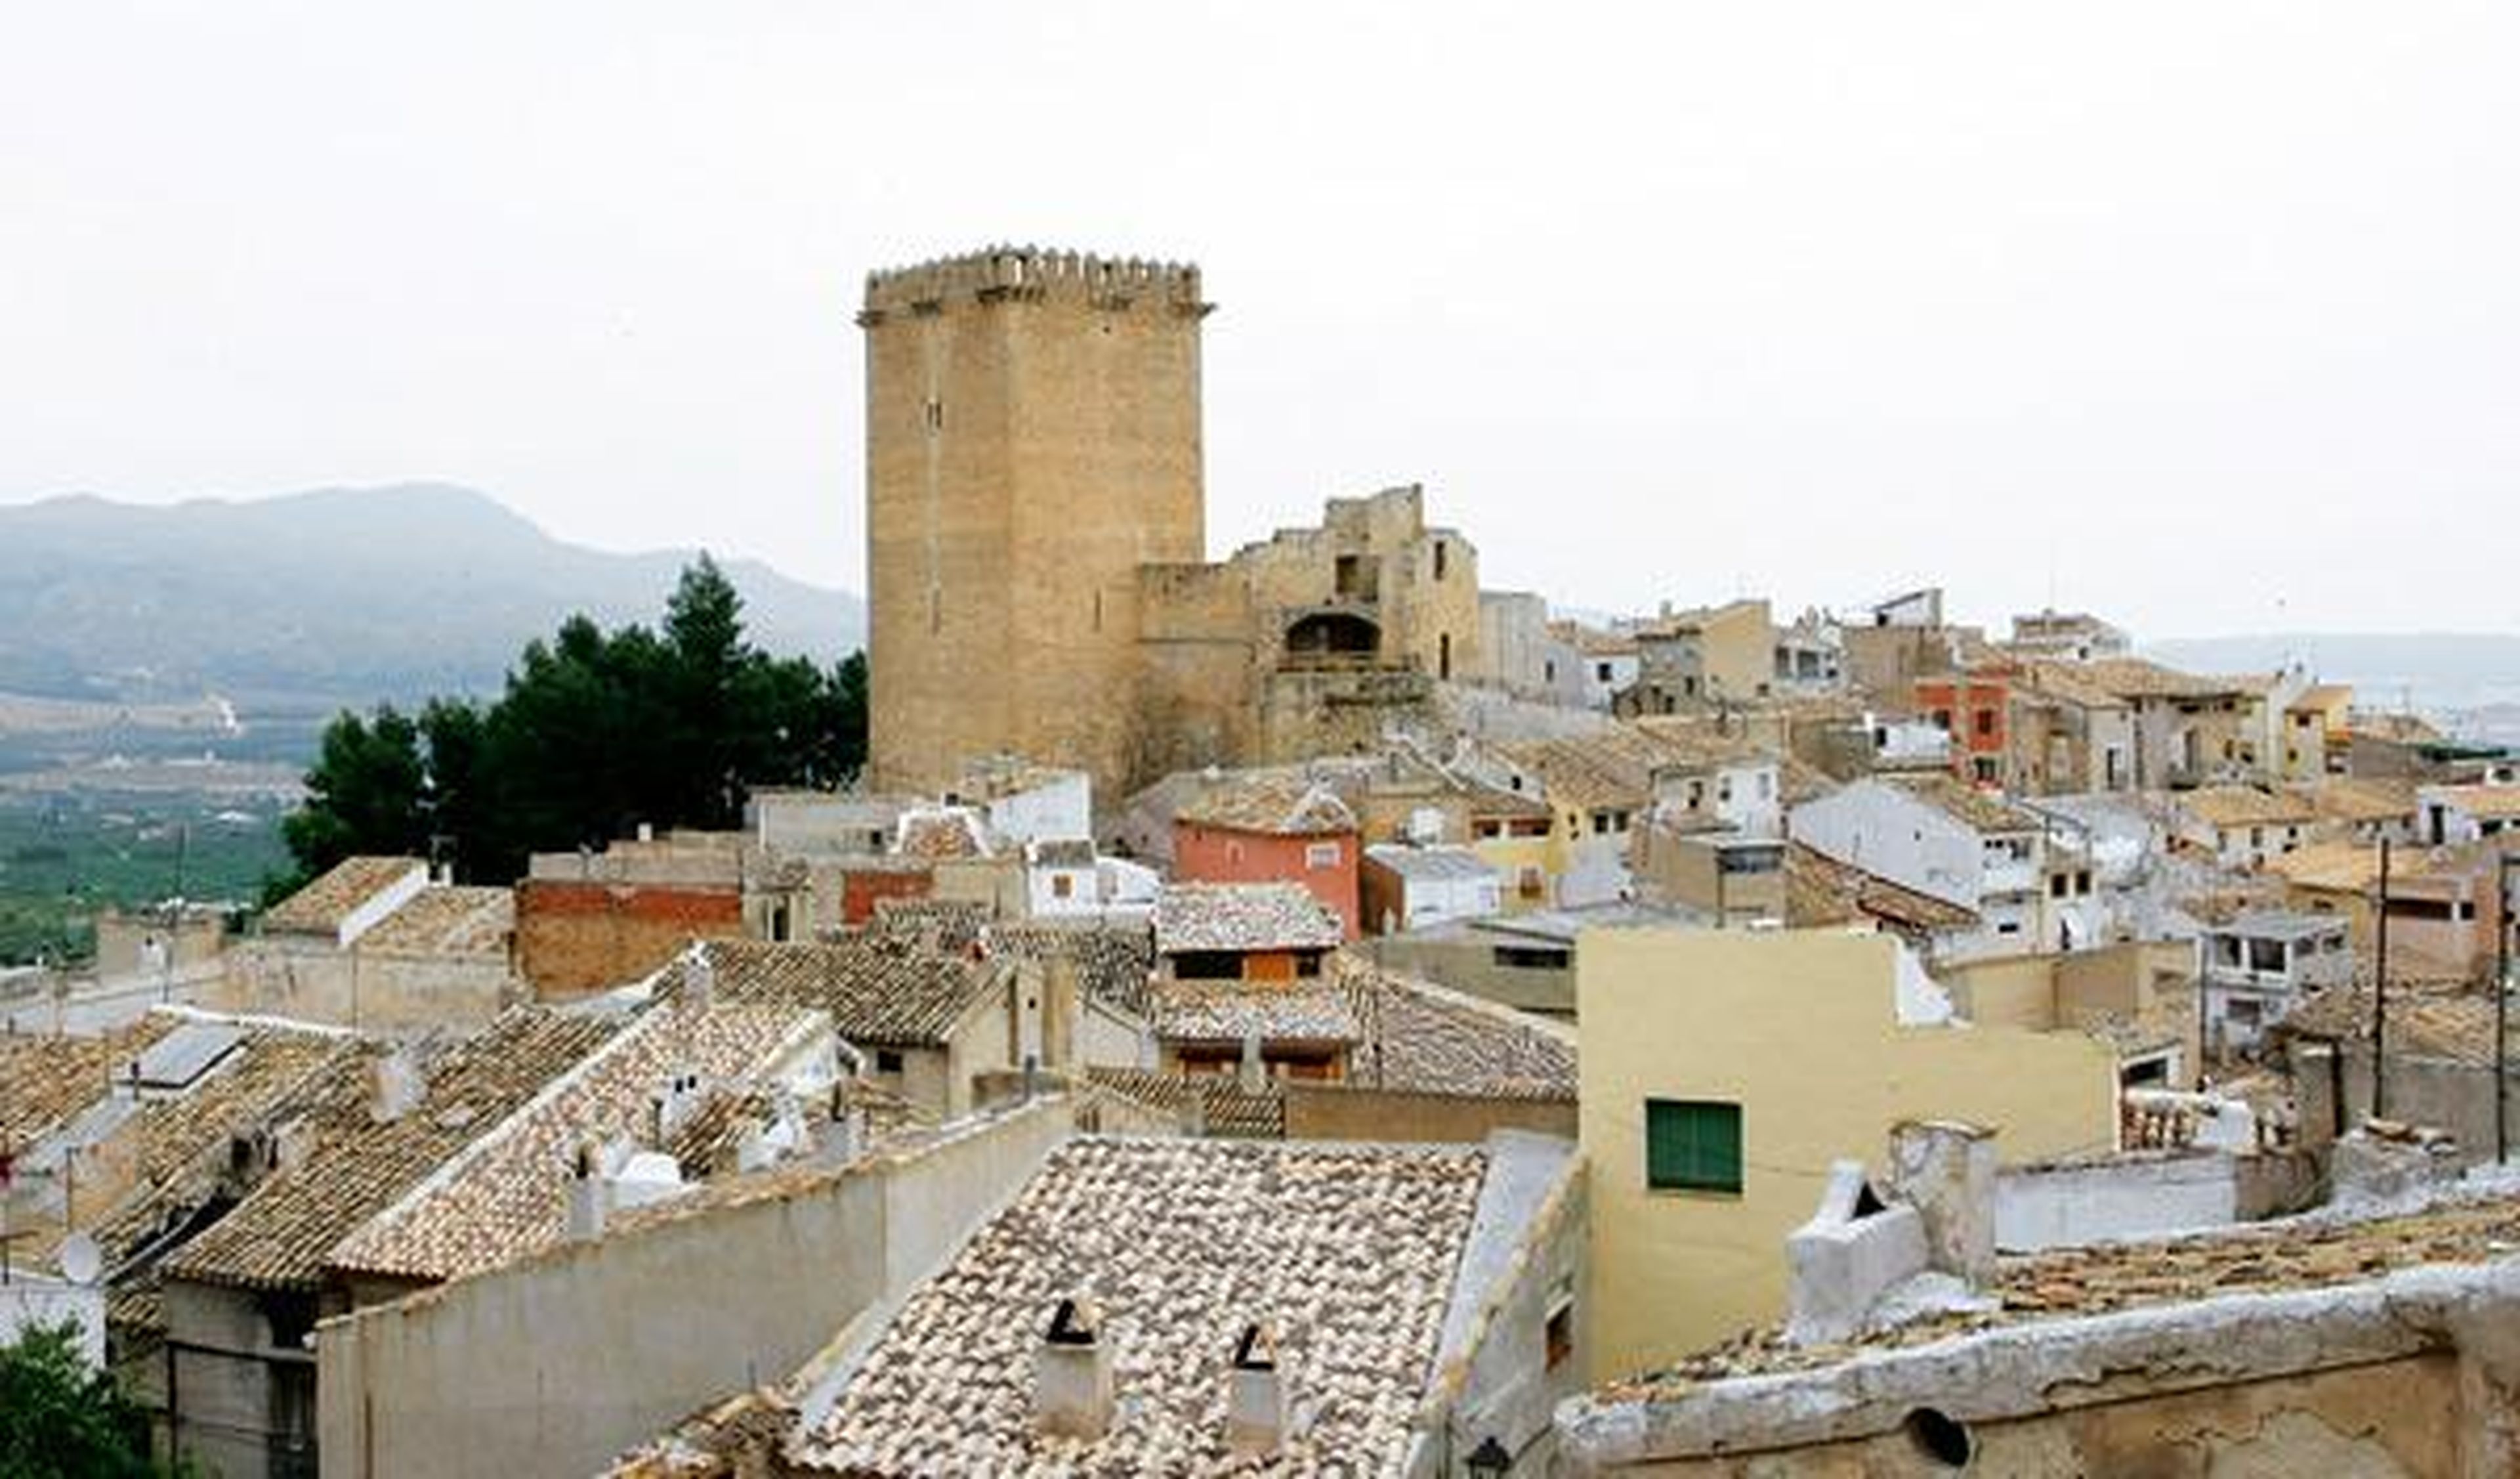 El municipio de Moratalla está dominada por un imponente castillo